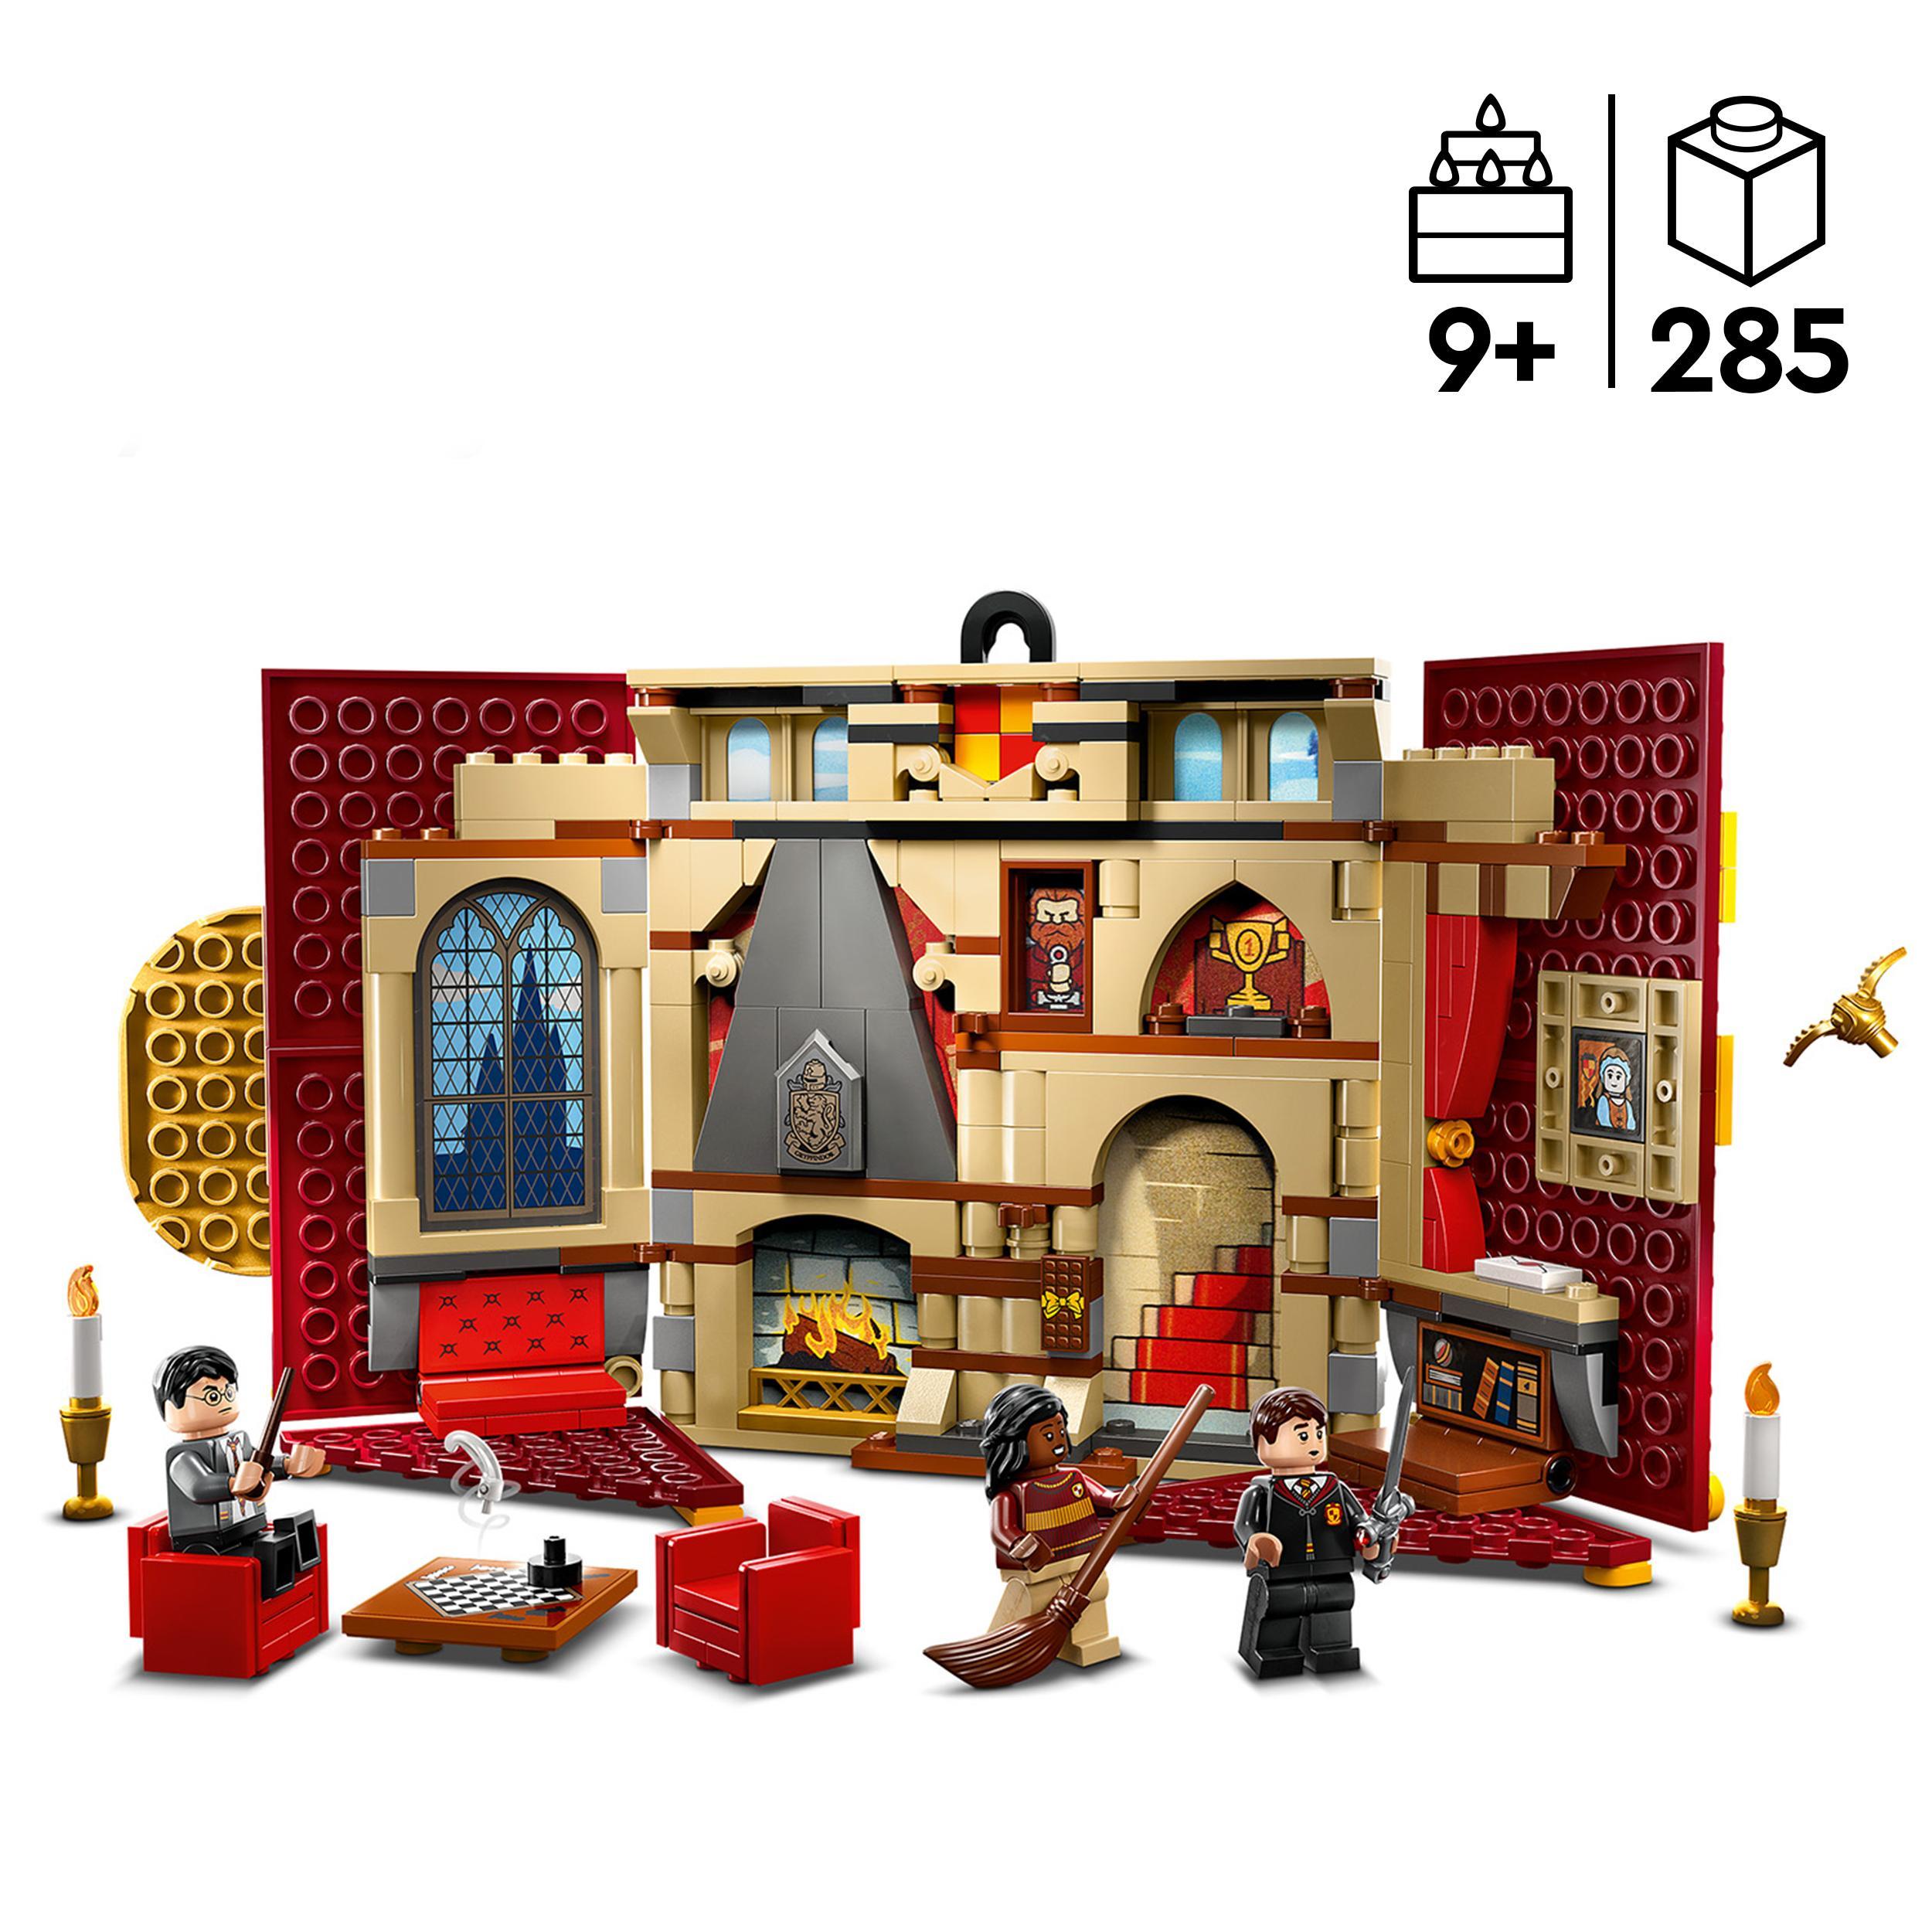 Lego harry potter 76409 stendardo della casa grifondoro da parete, sala comune castello di hogwarts, giocattolo da collezione - LEGO® Harry Potter™